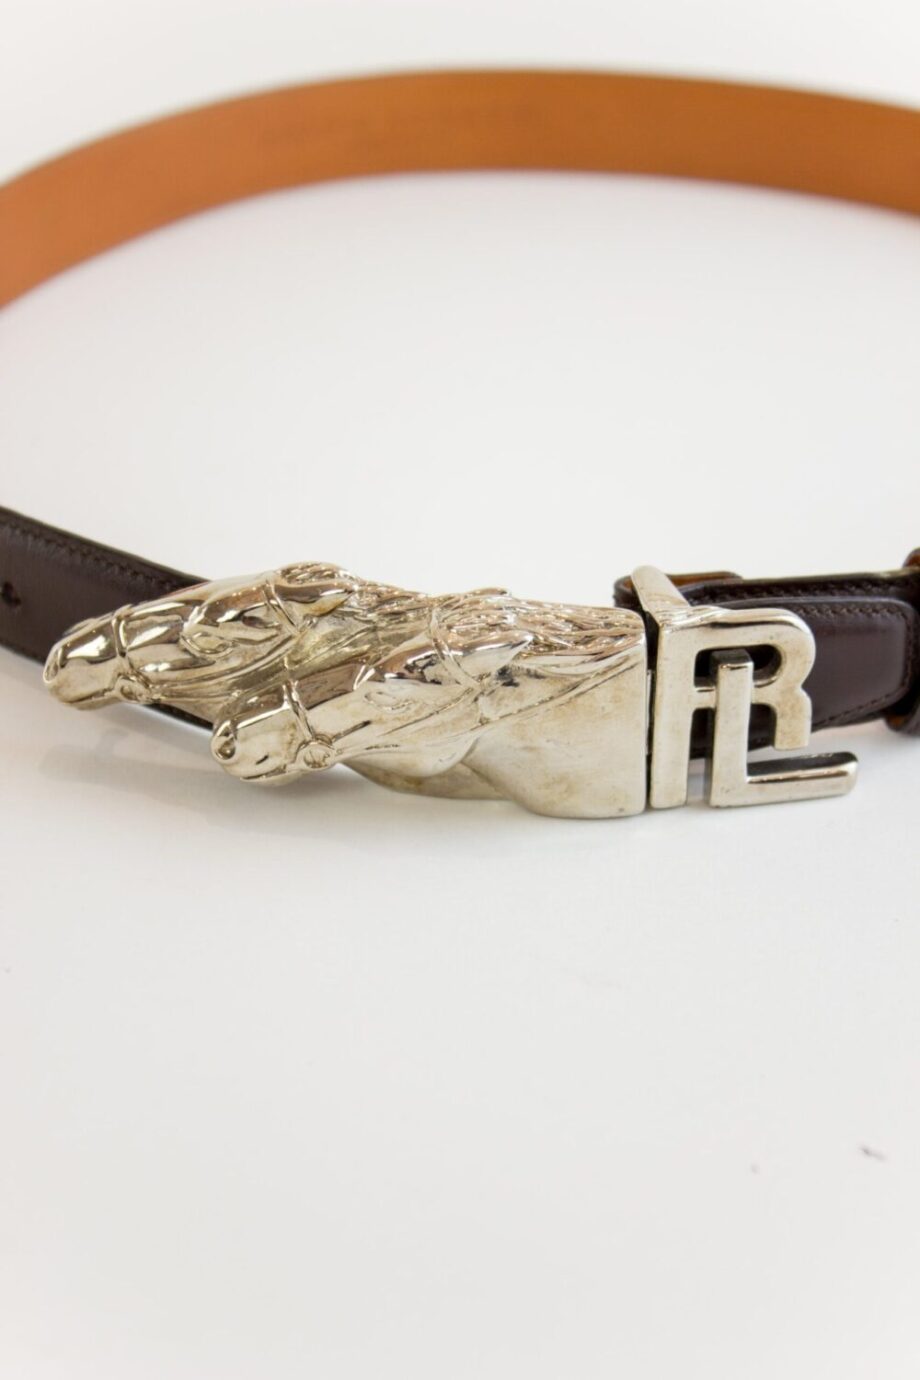 Ralph Lauren belt closeup